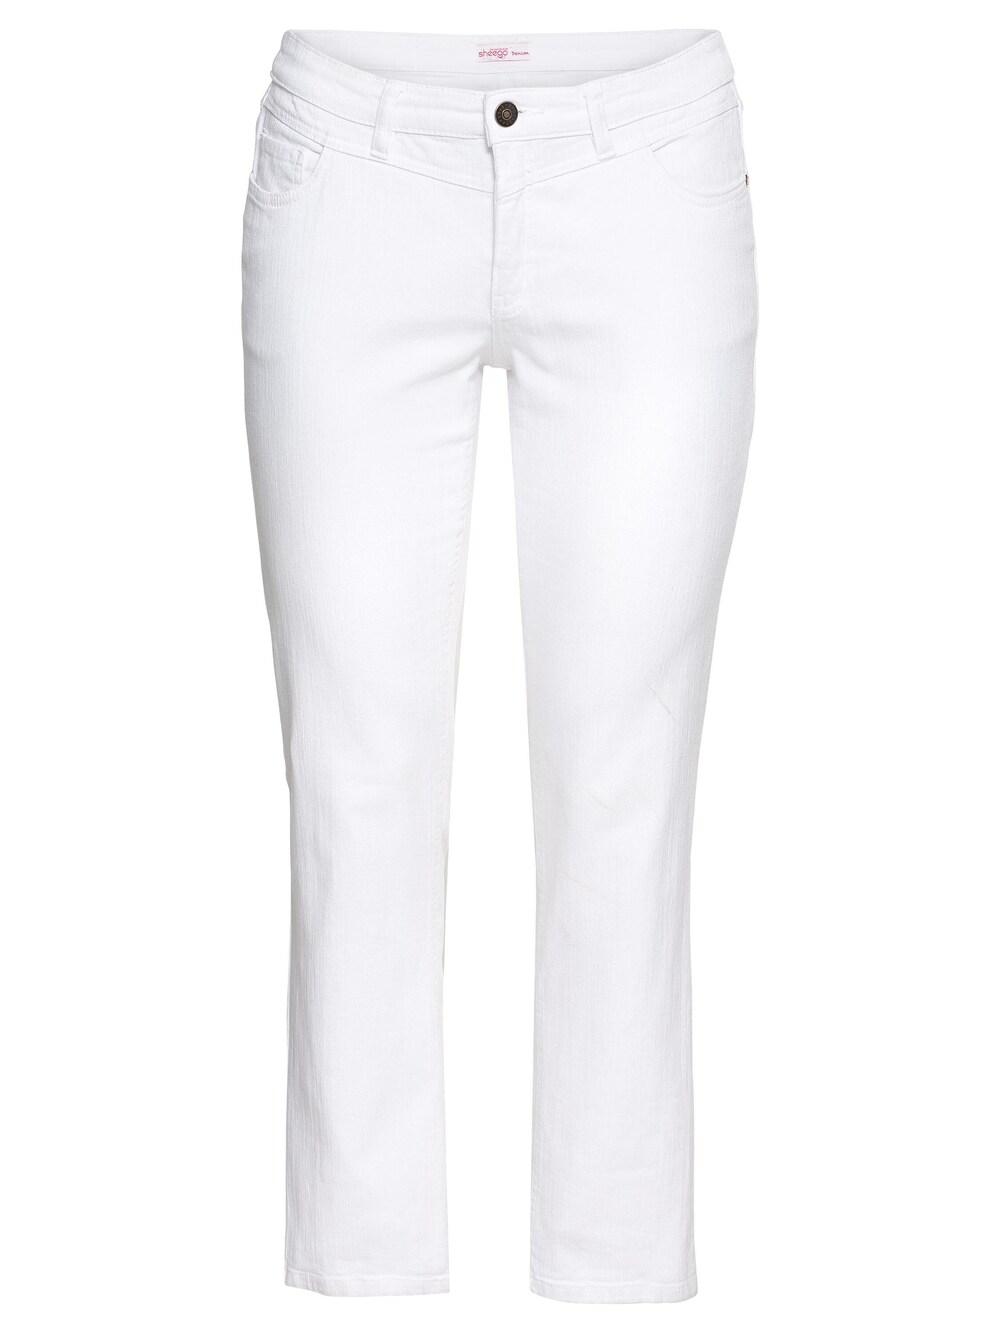 Обычные джинсы Sheego, белый